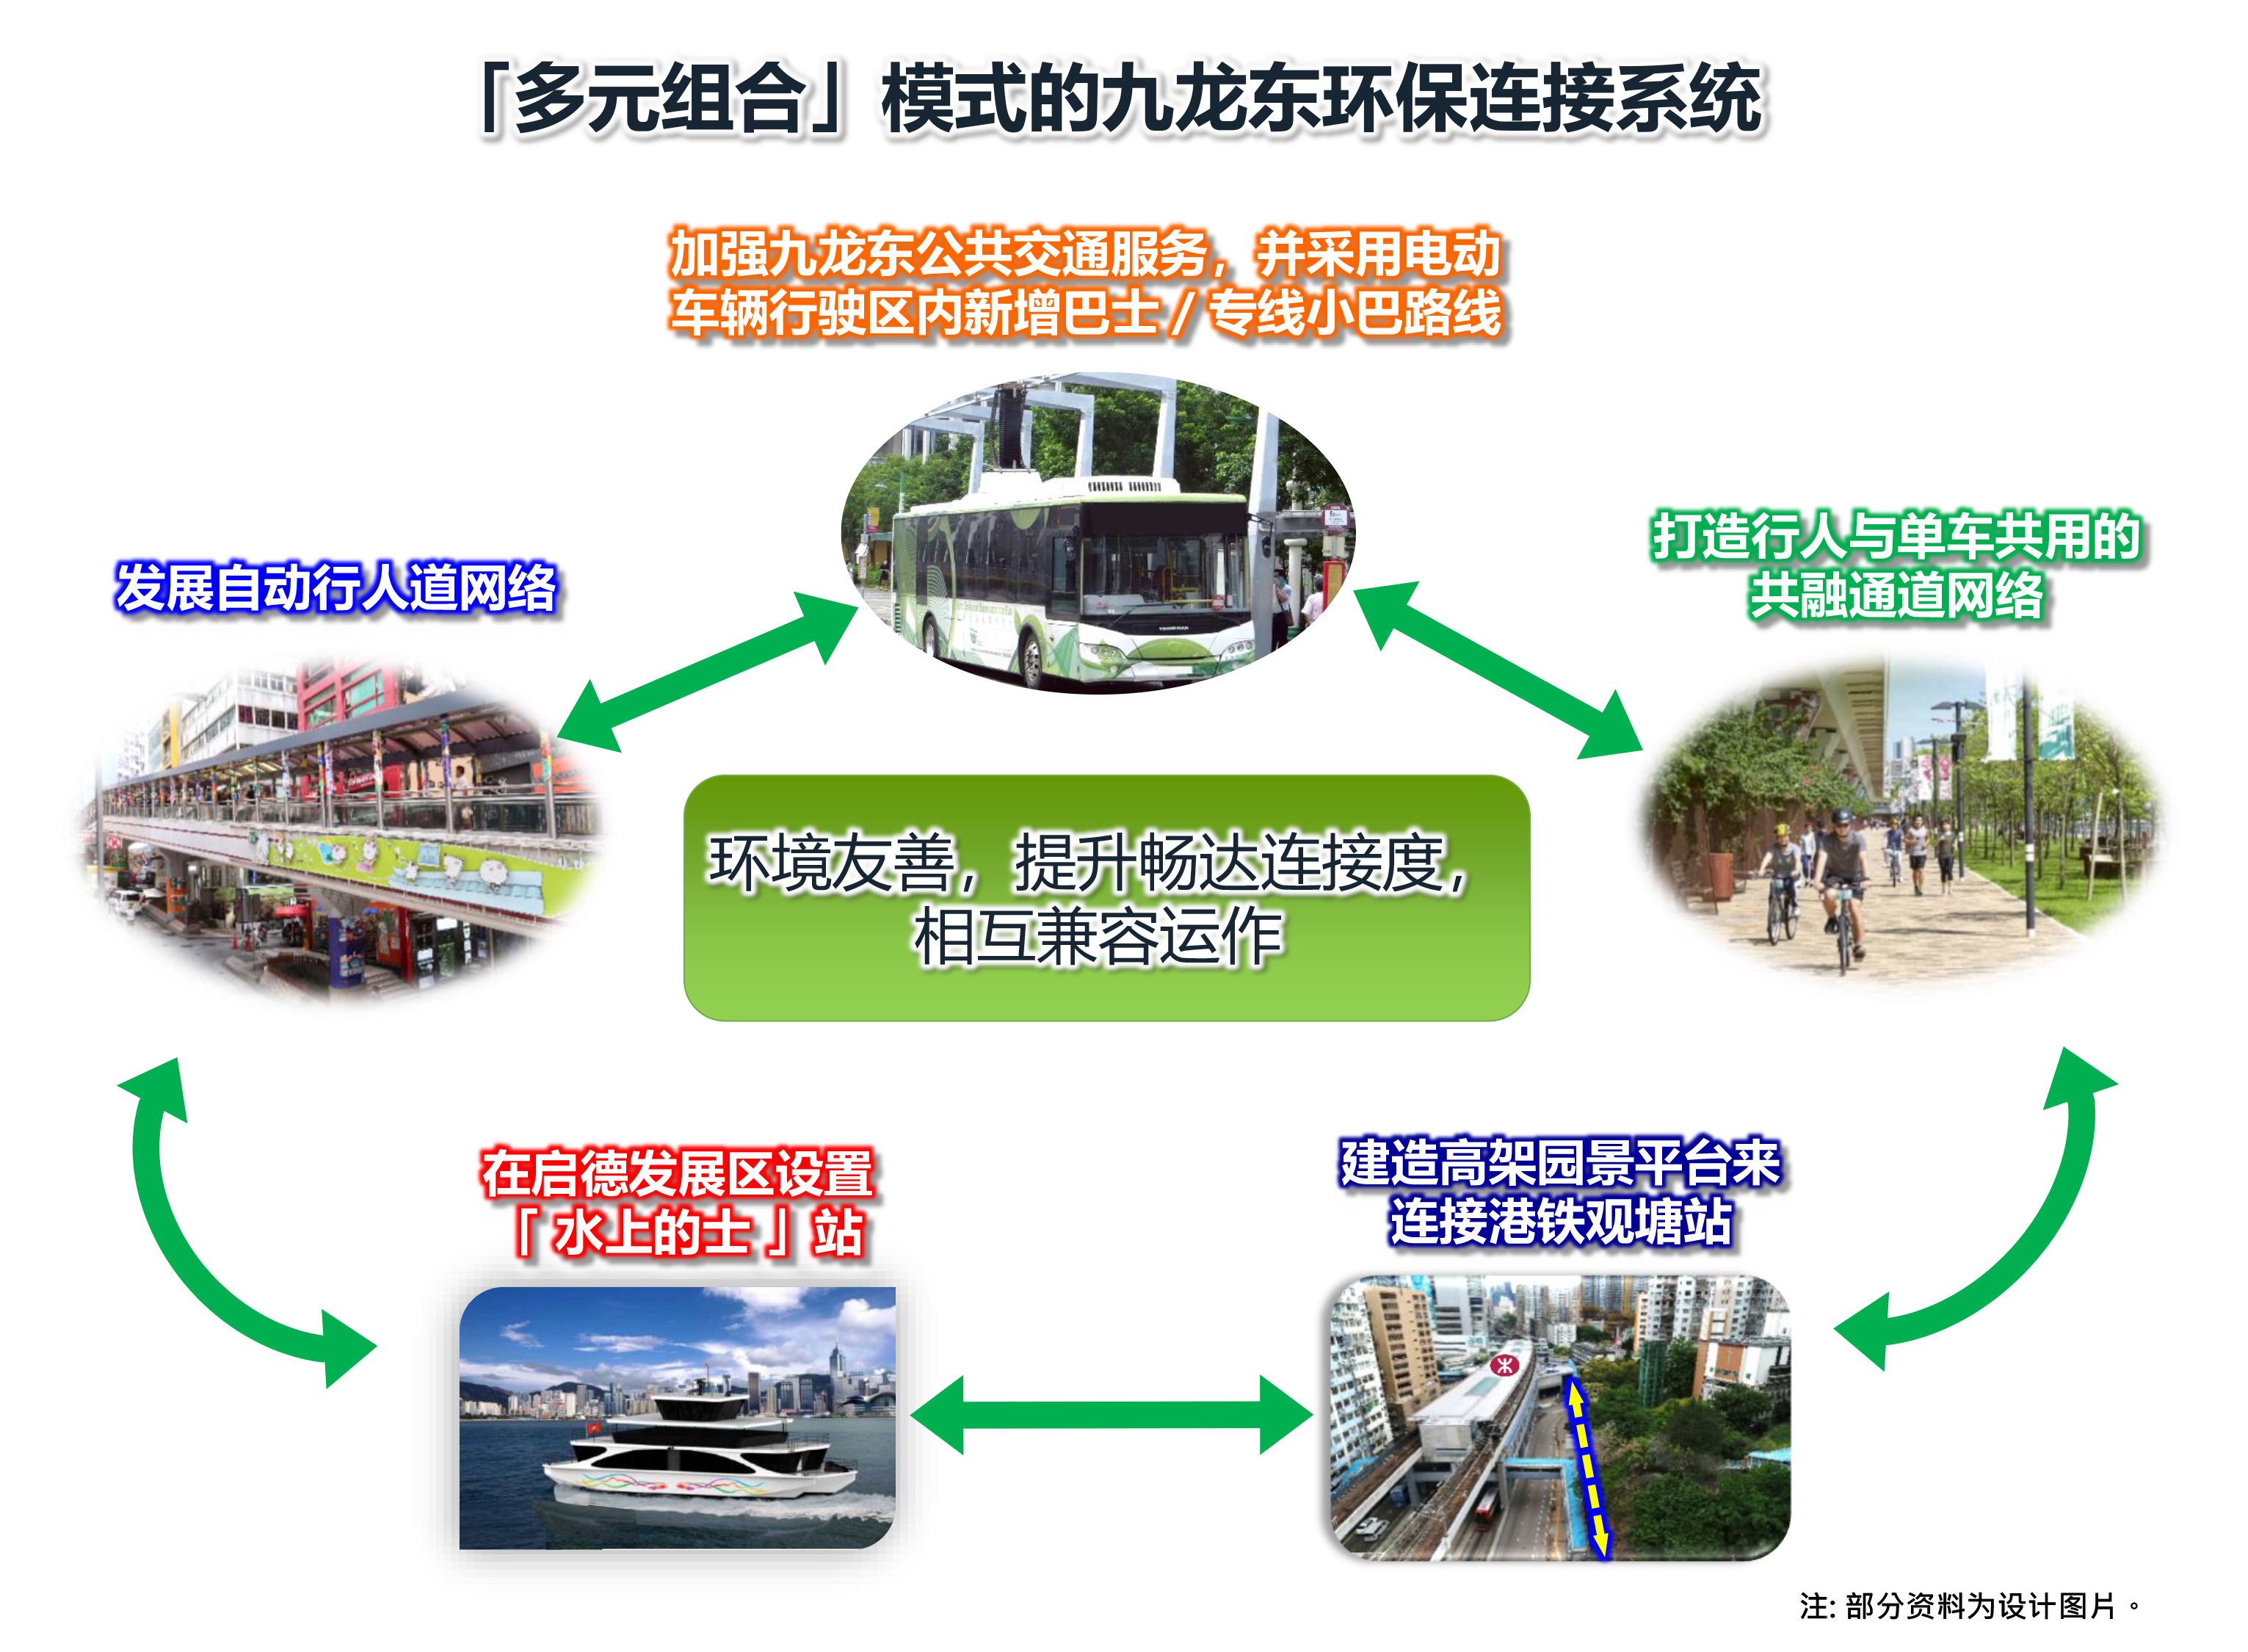 「多元组合」模式的九龙东环保连接系统